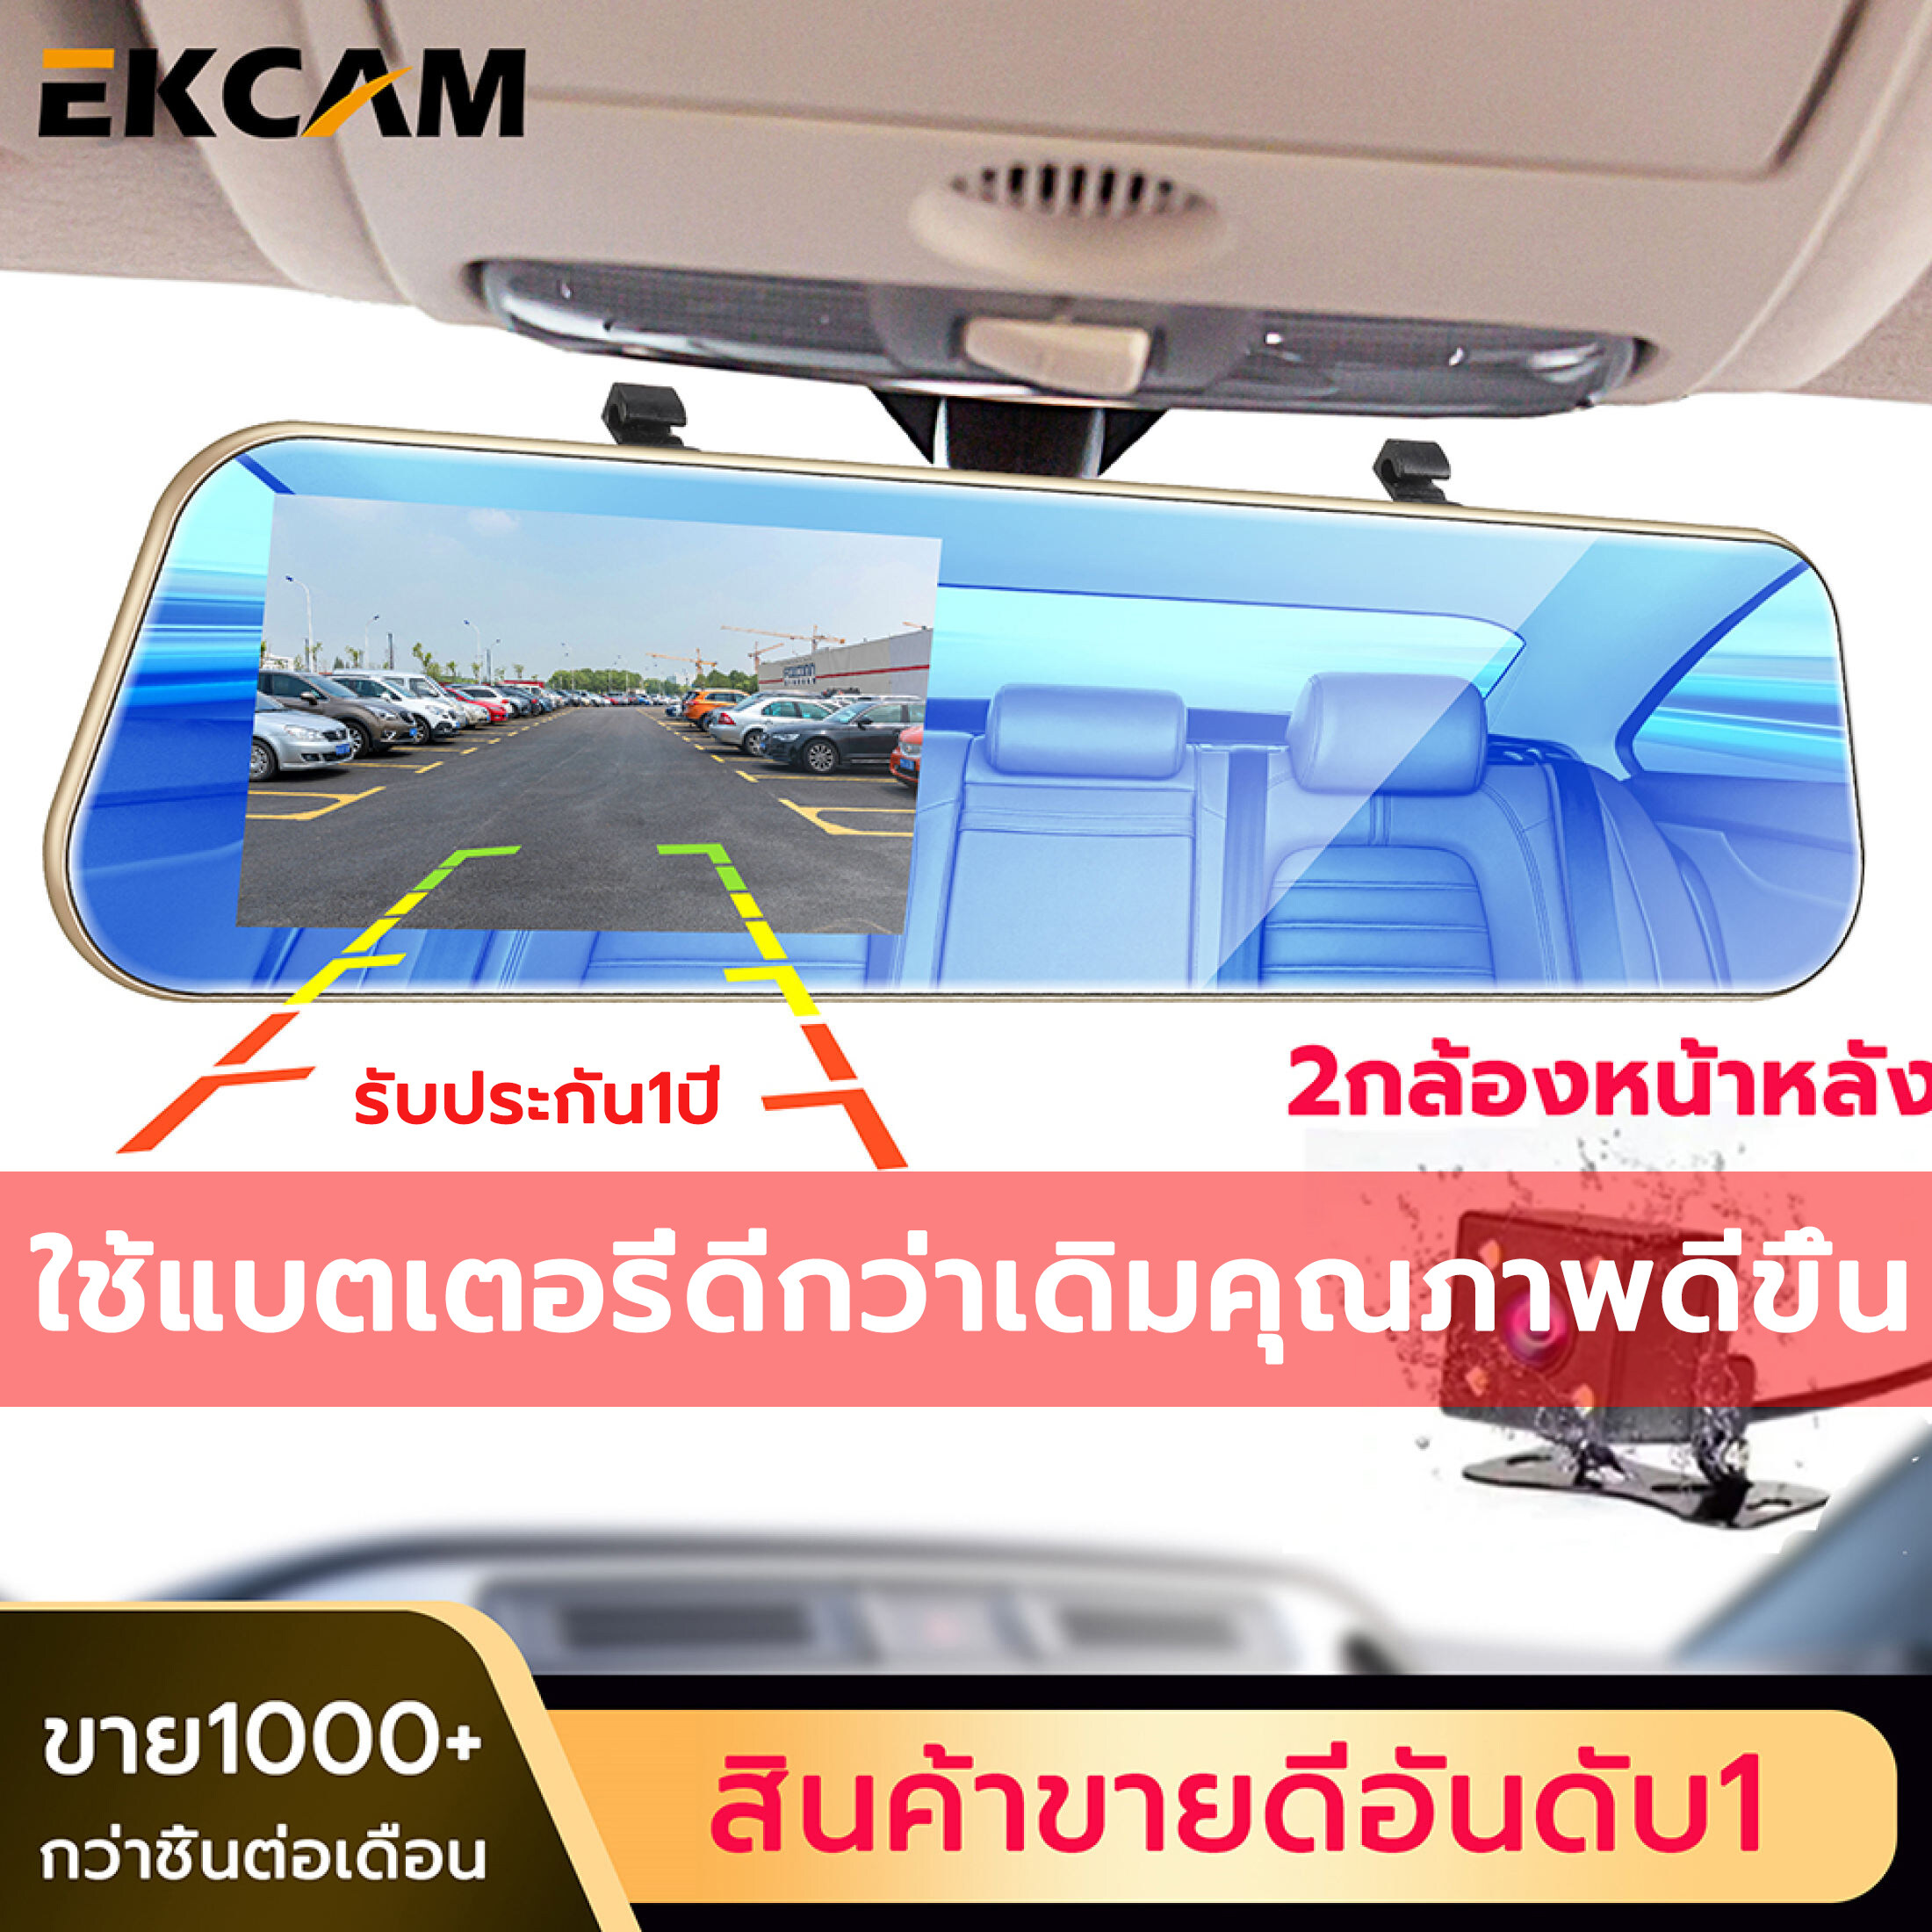 กล้องติดรถยนต์ TR50 เมนูภาษาไทย!! กล้องติดรถยน กล้องติดรถยนต์ จอกระจก ไร้ขอบ สบายตา คมชัดระดับ Full HD 1080P H.264 พร้อมกล้องหลัง และกระจกตัดแสง กล้องคู่ 2กล้อง หน้า-หลัง